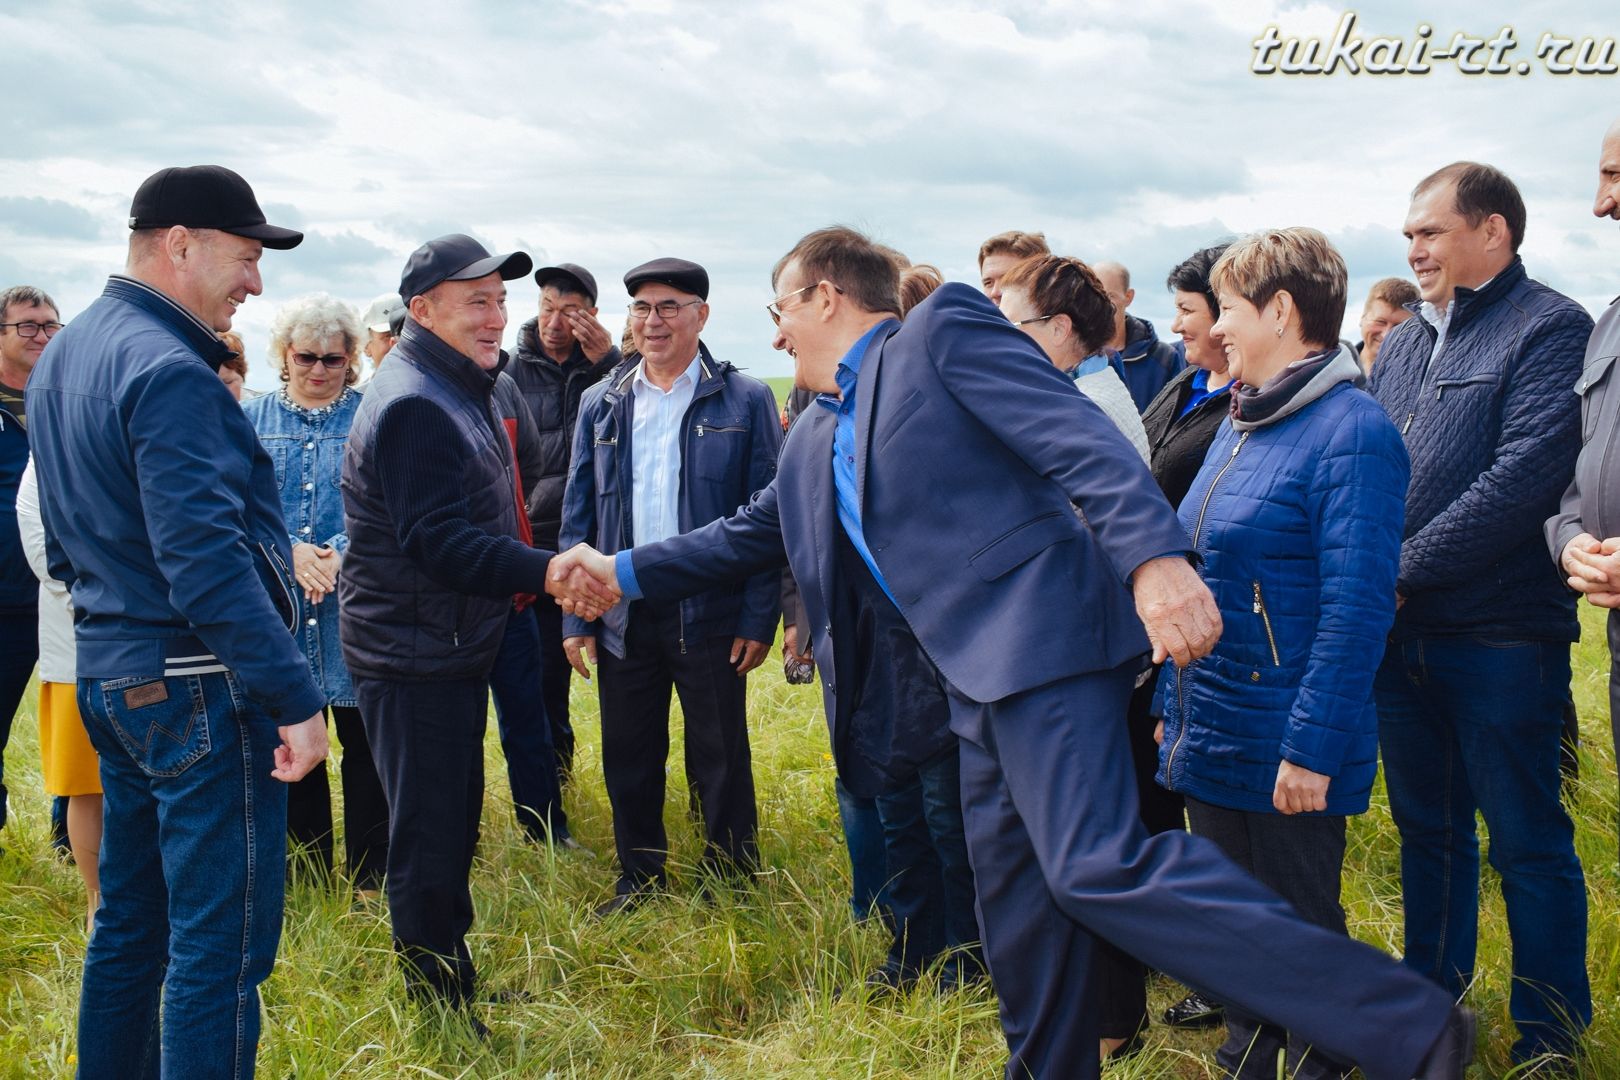 Тукаевский район посетил министр сельского хозяйства и продовольствия РТ Марат Ахметов ФОТО